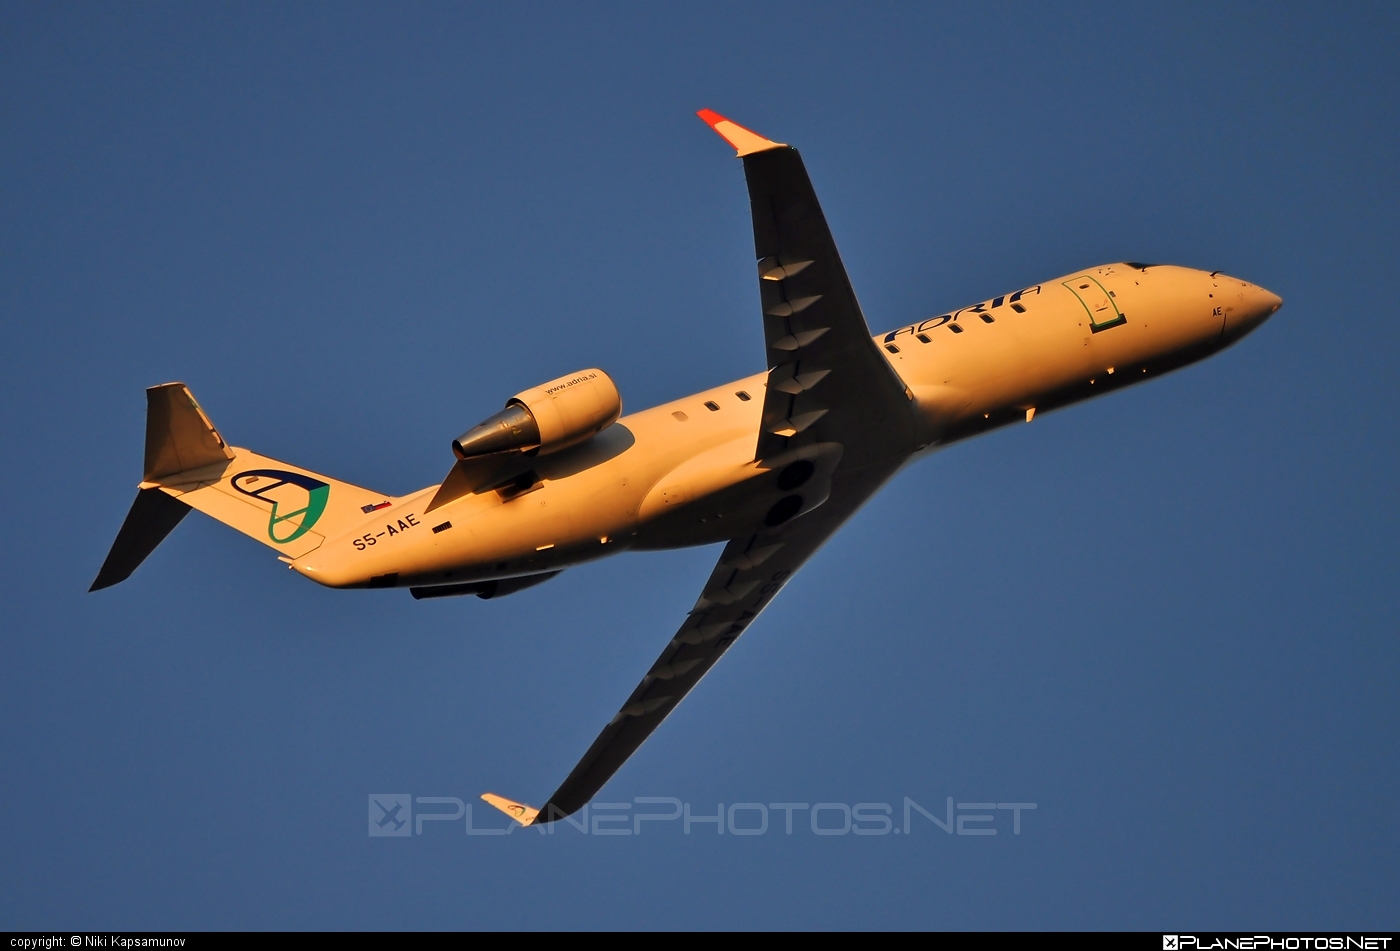 Bombardier CRJ200LR - S5-AAE operated by Adria Airways #bombardier #bombardiercrj #bombardiercrj200 #bombardiercrj200lr #crj200 #crj200lr